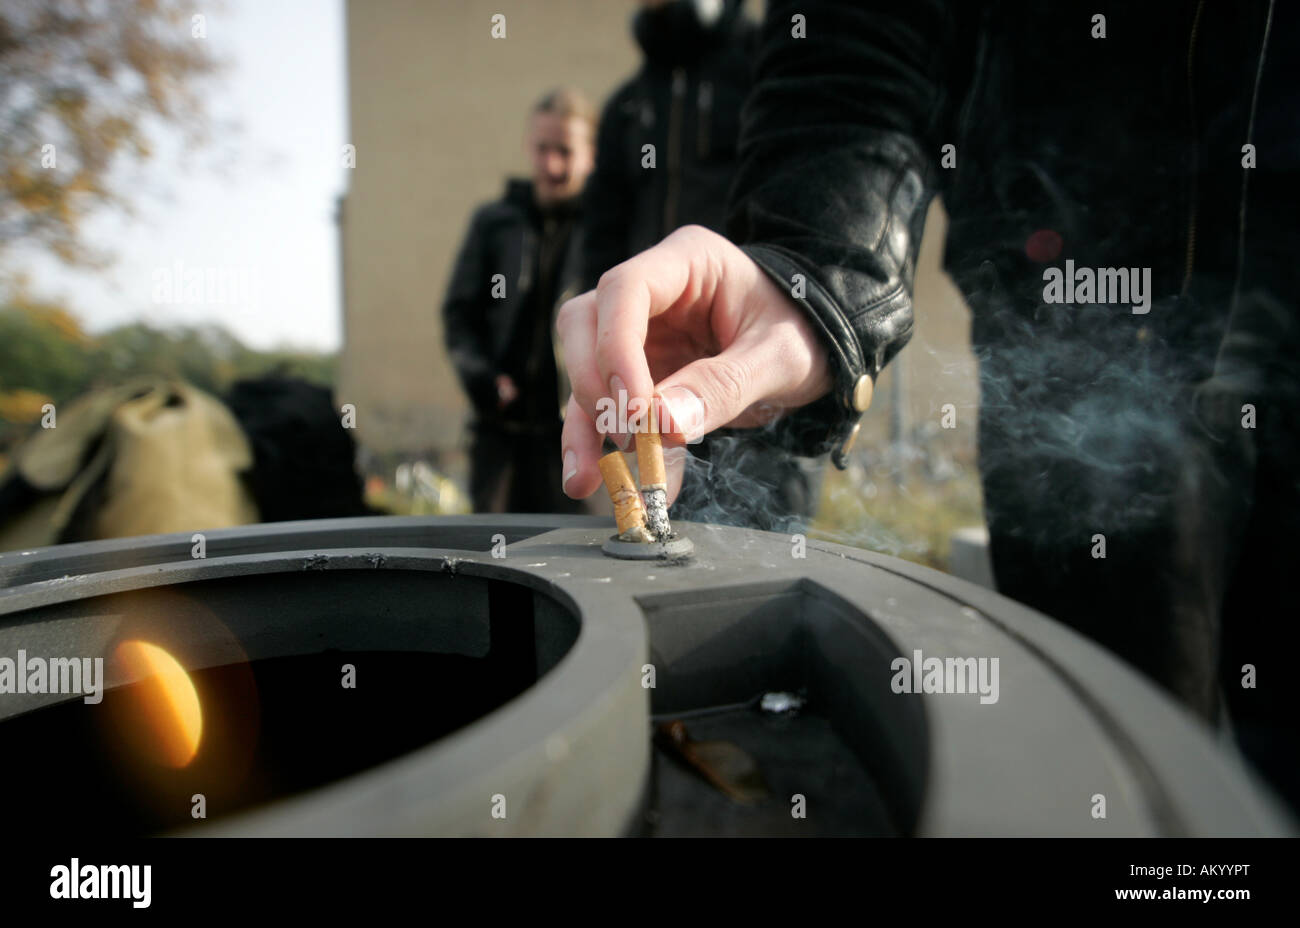 Un élève fumeur met sa cigarette dans un bac à cendres Banque D'Images